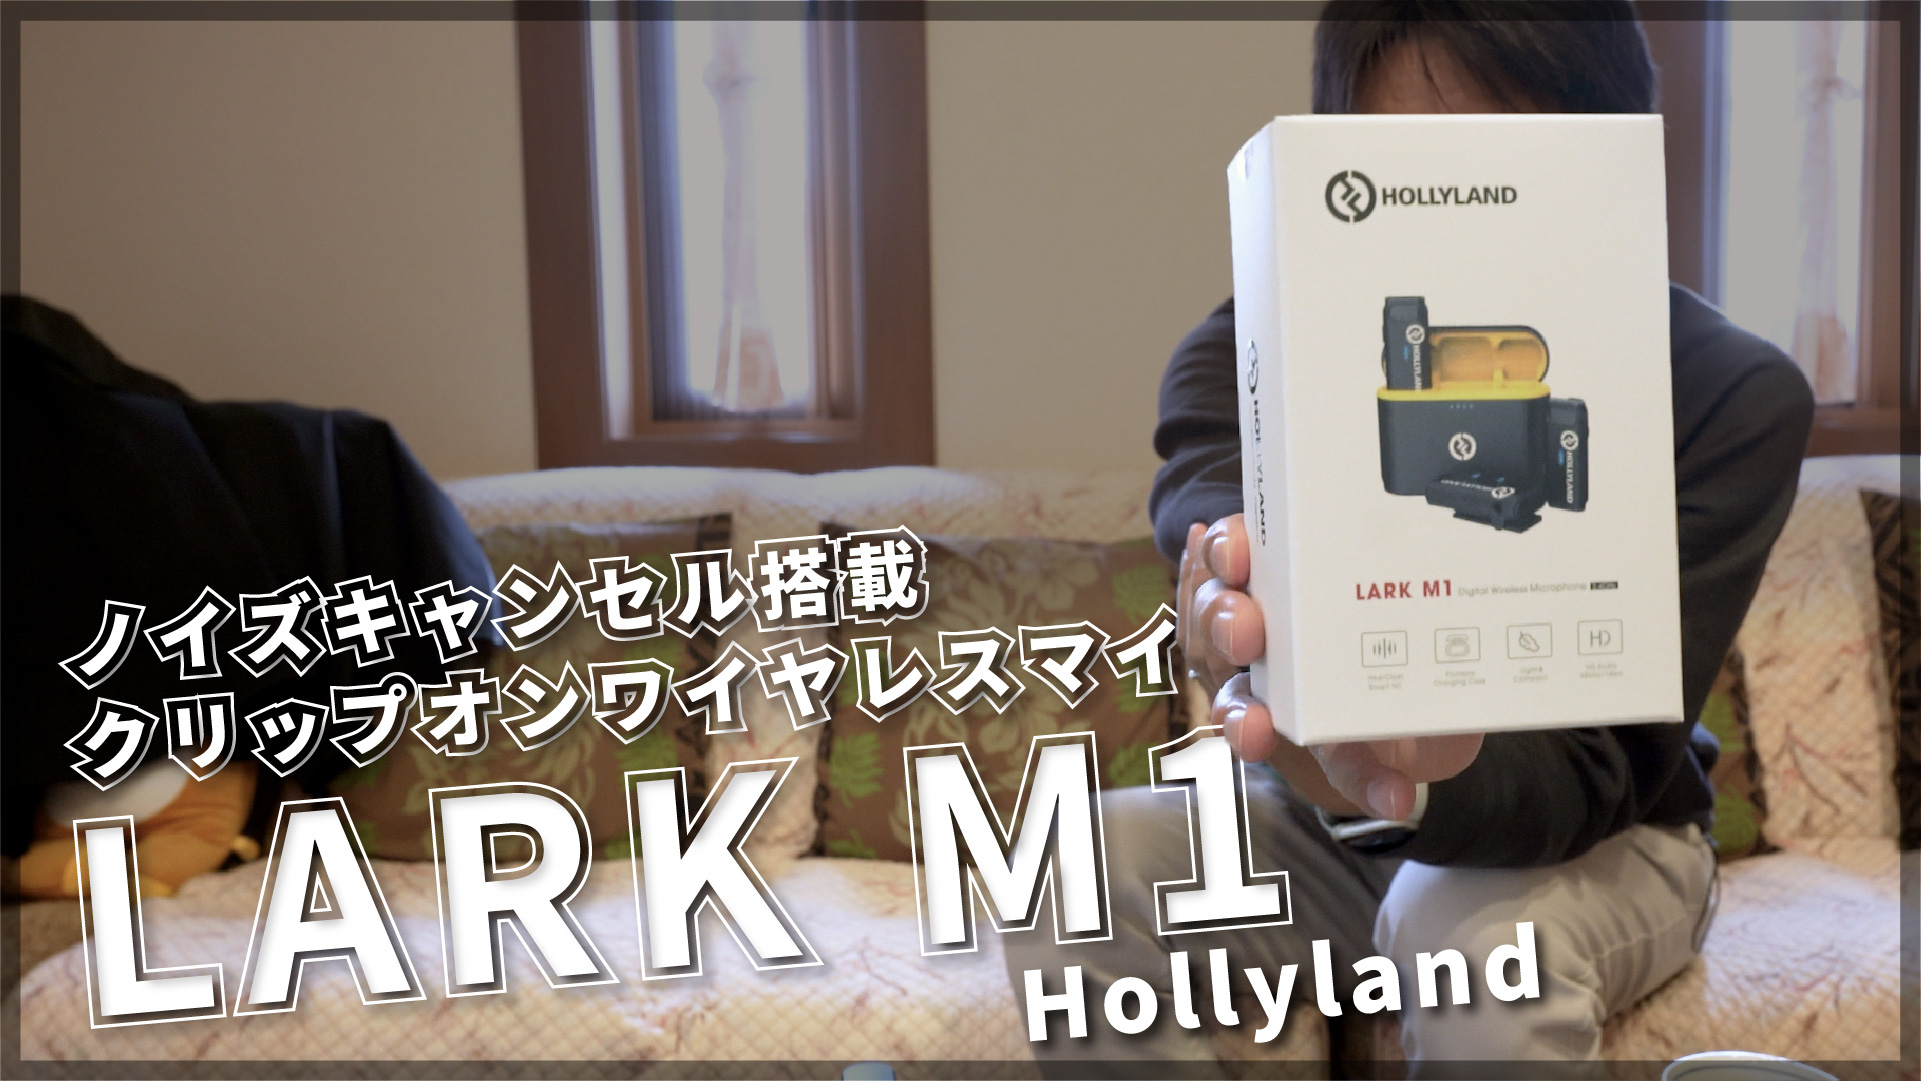 ワイヤレスマイク】Hollyland LARK M1 レビュー【ノイズキャンセル